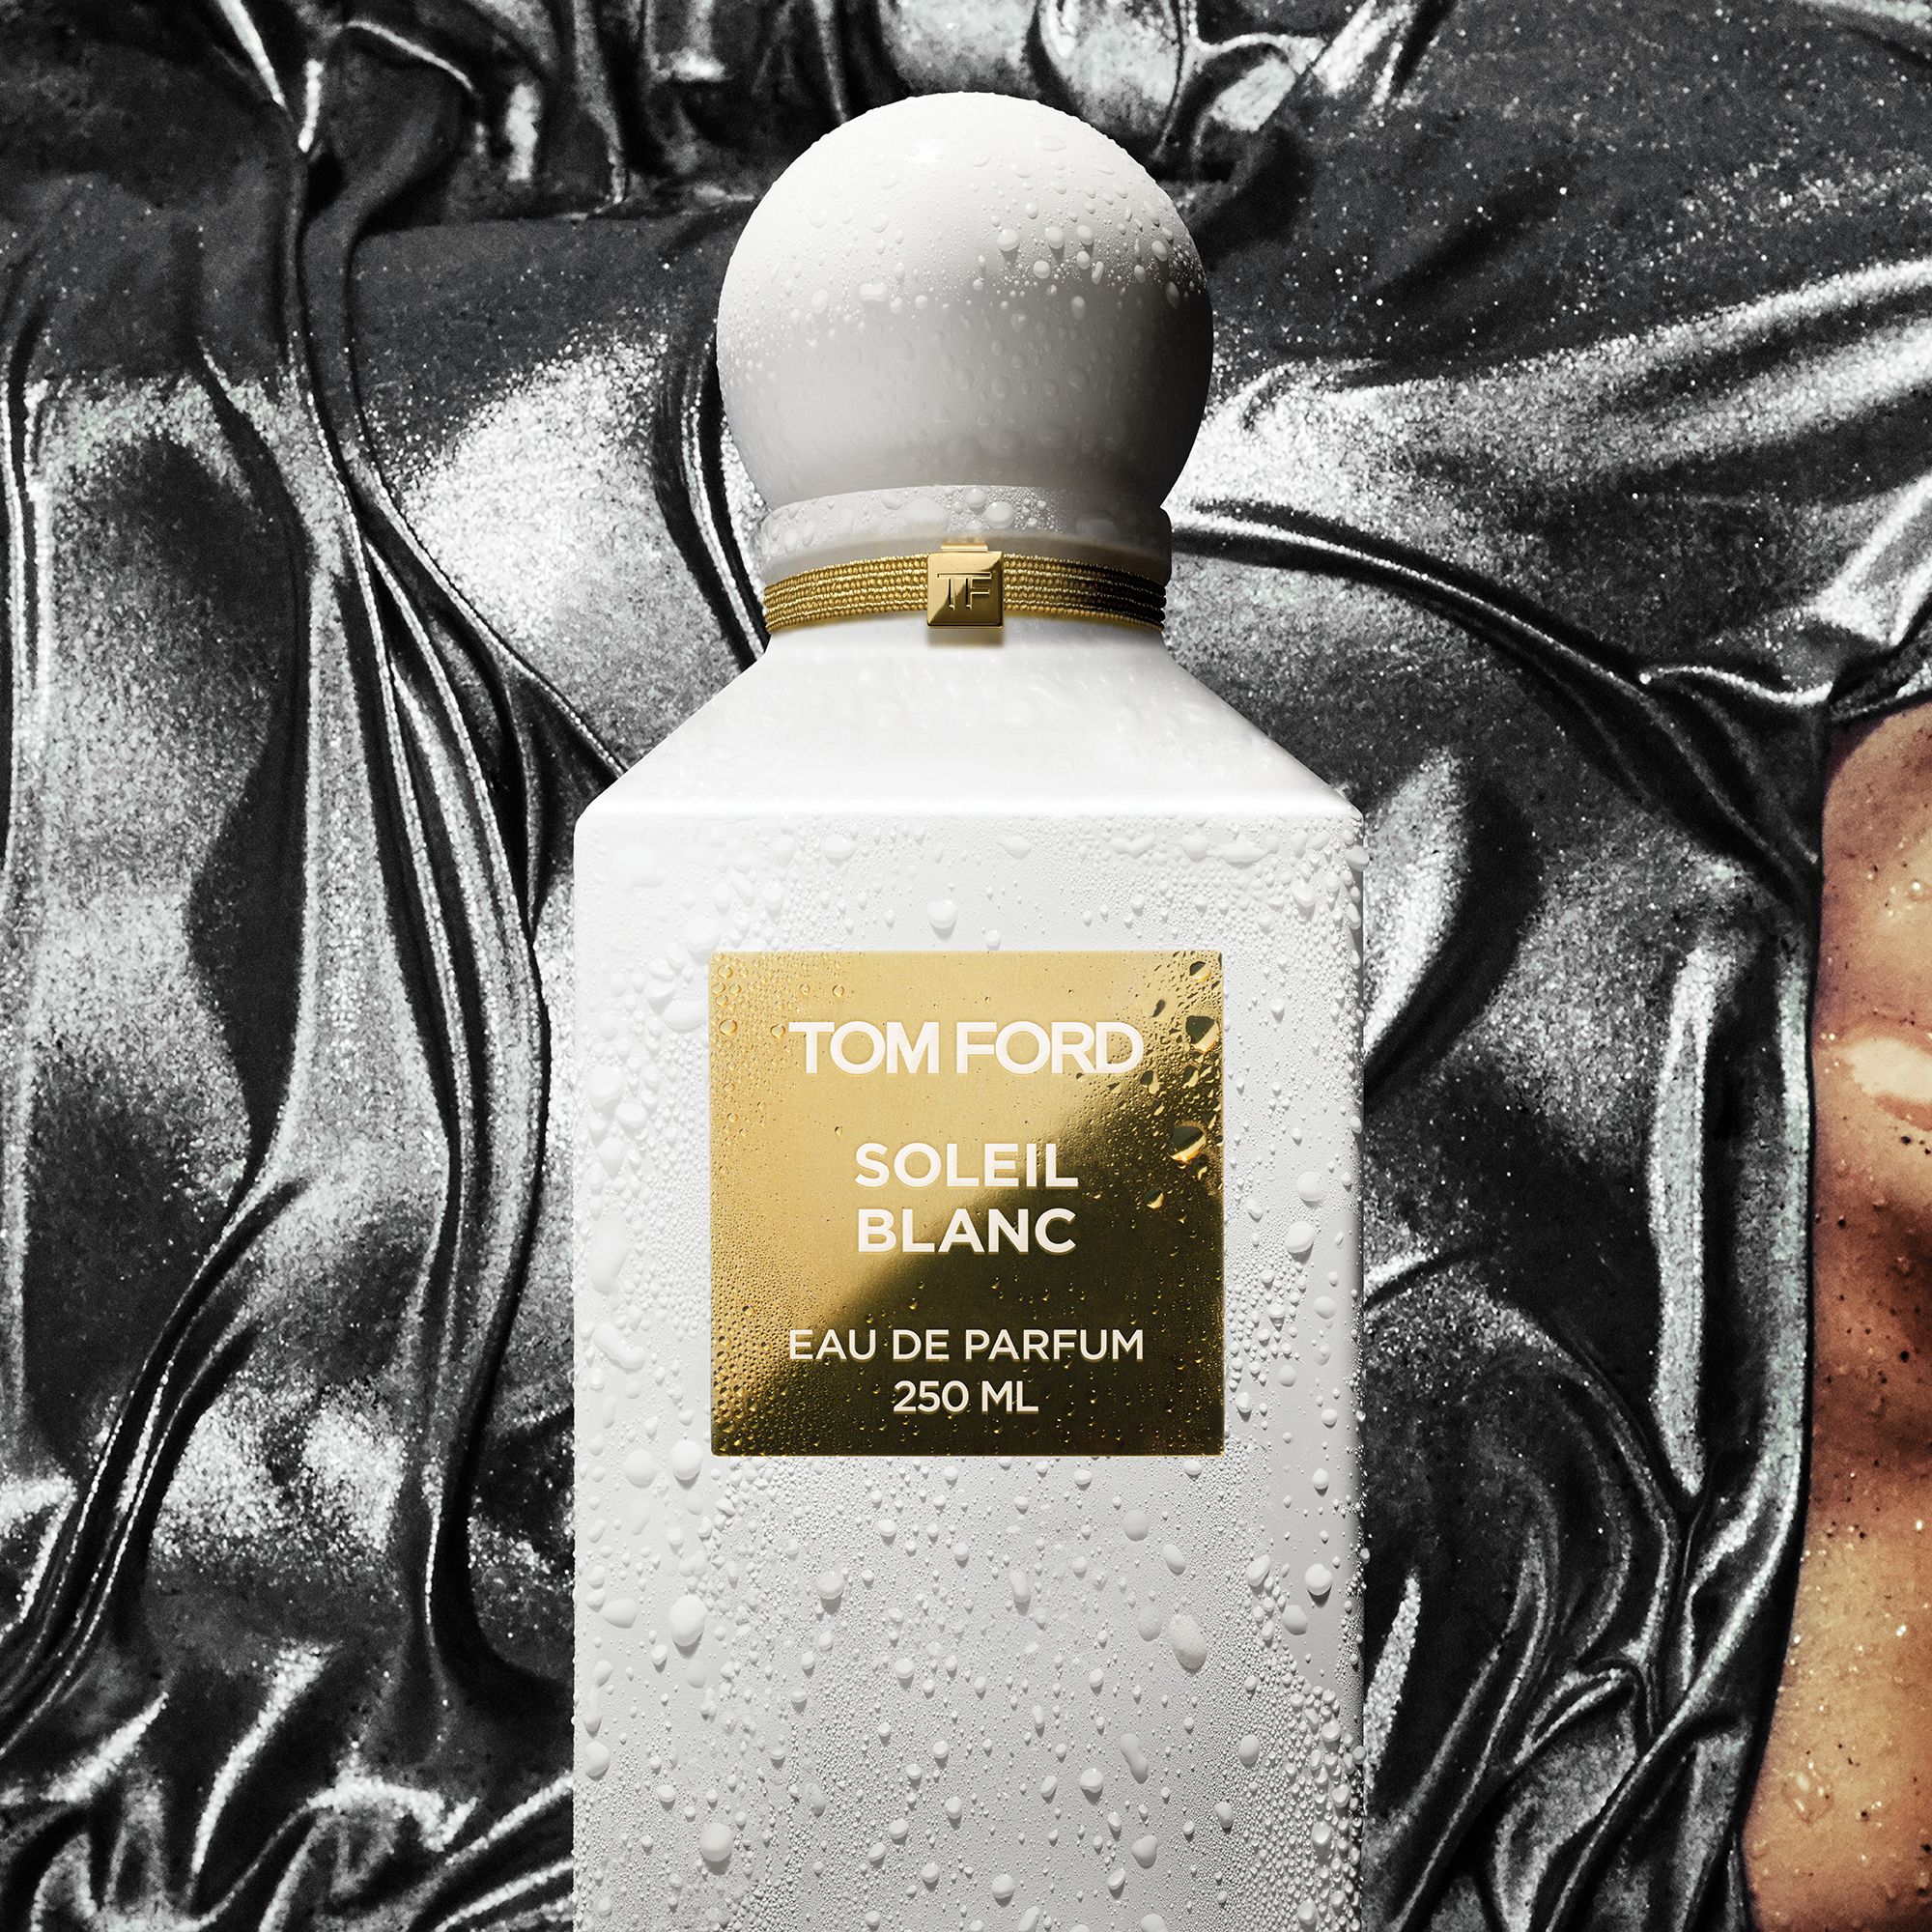 TOM FORD Private Blend Soleil Blanc Eau de Parfum, 250ml 2